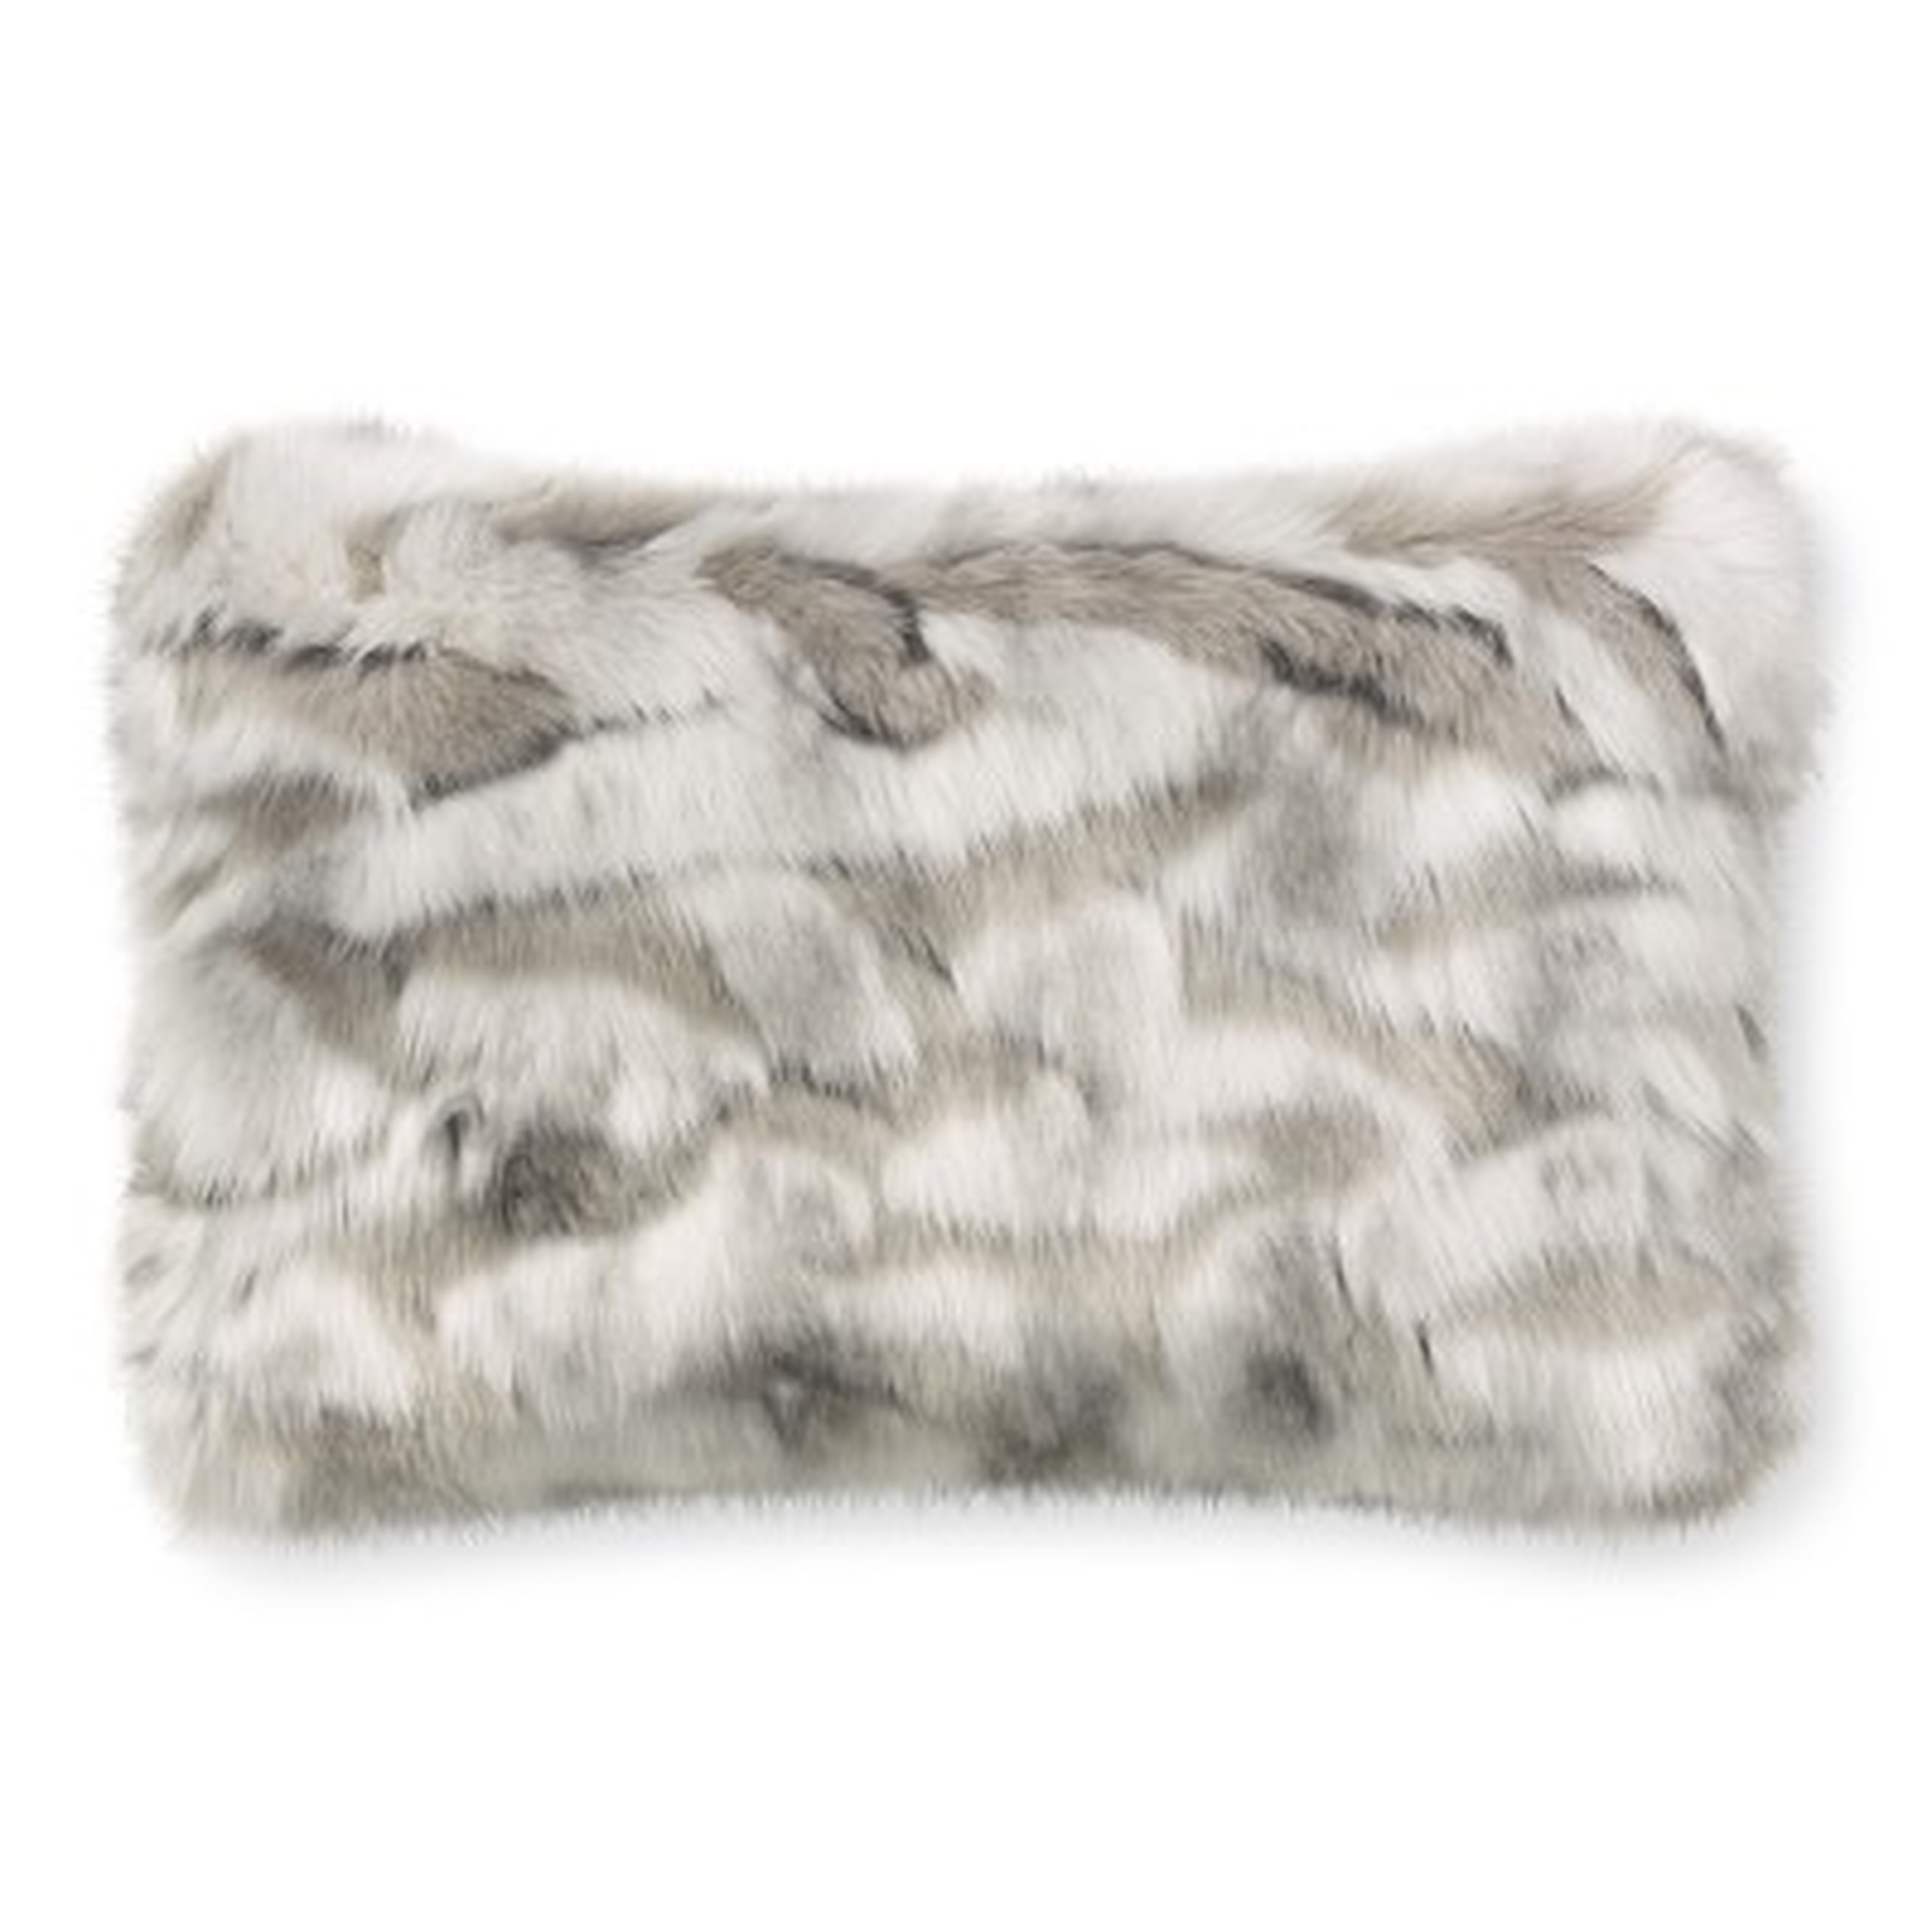 Faux Fur Pillow Cover, 14" X 22", Gray Fox - Williams Sonoma